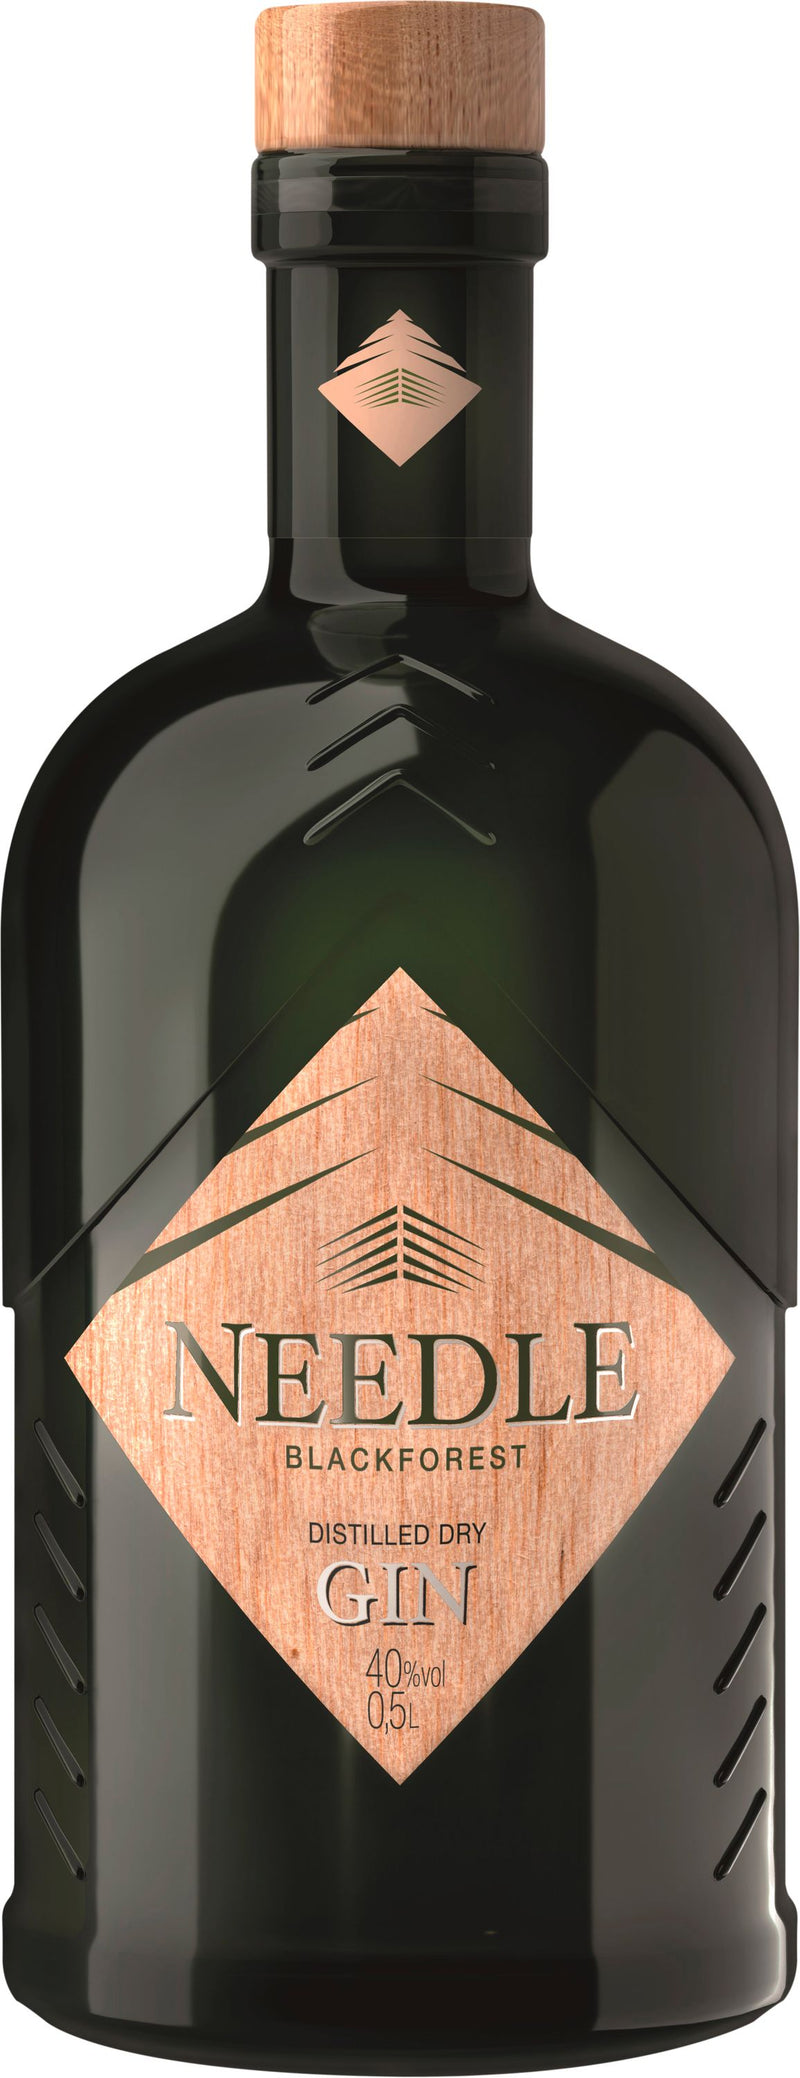 Bimmerle Black Forest Distilled Dry Schwarzwald Gin Needle 40% Vol 500ml